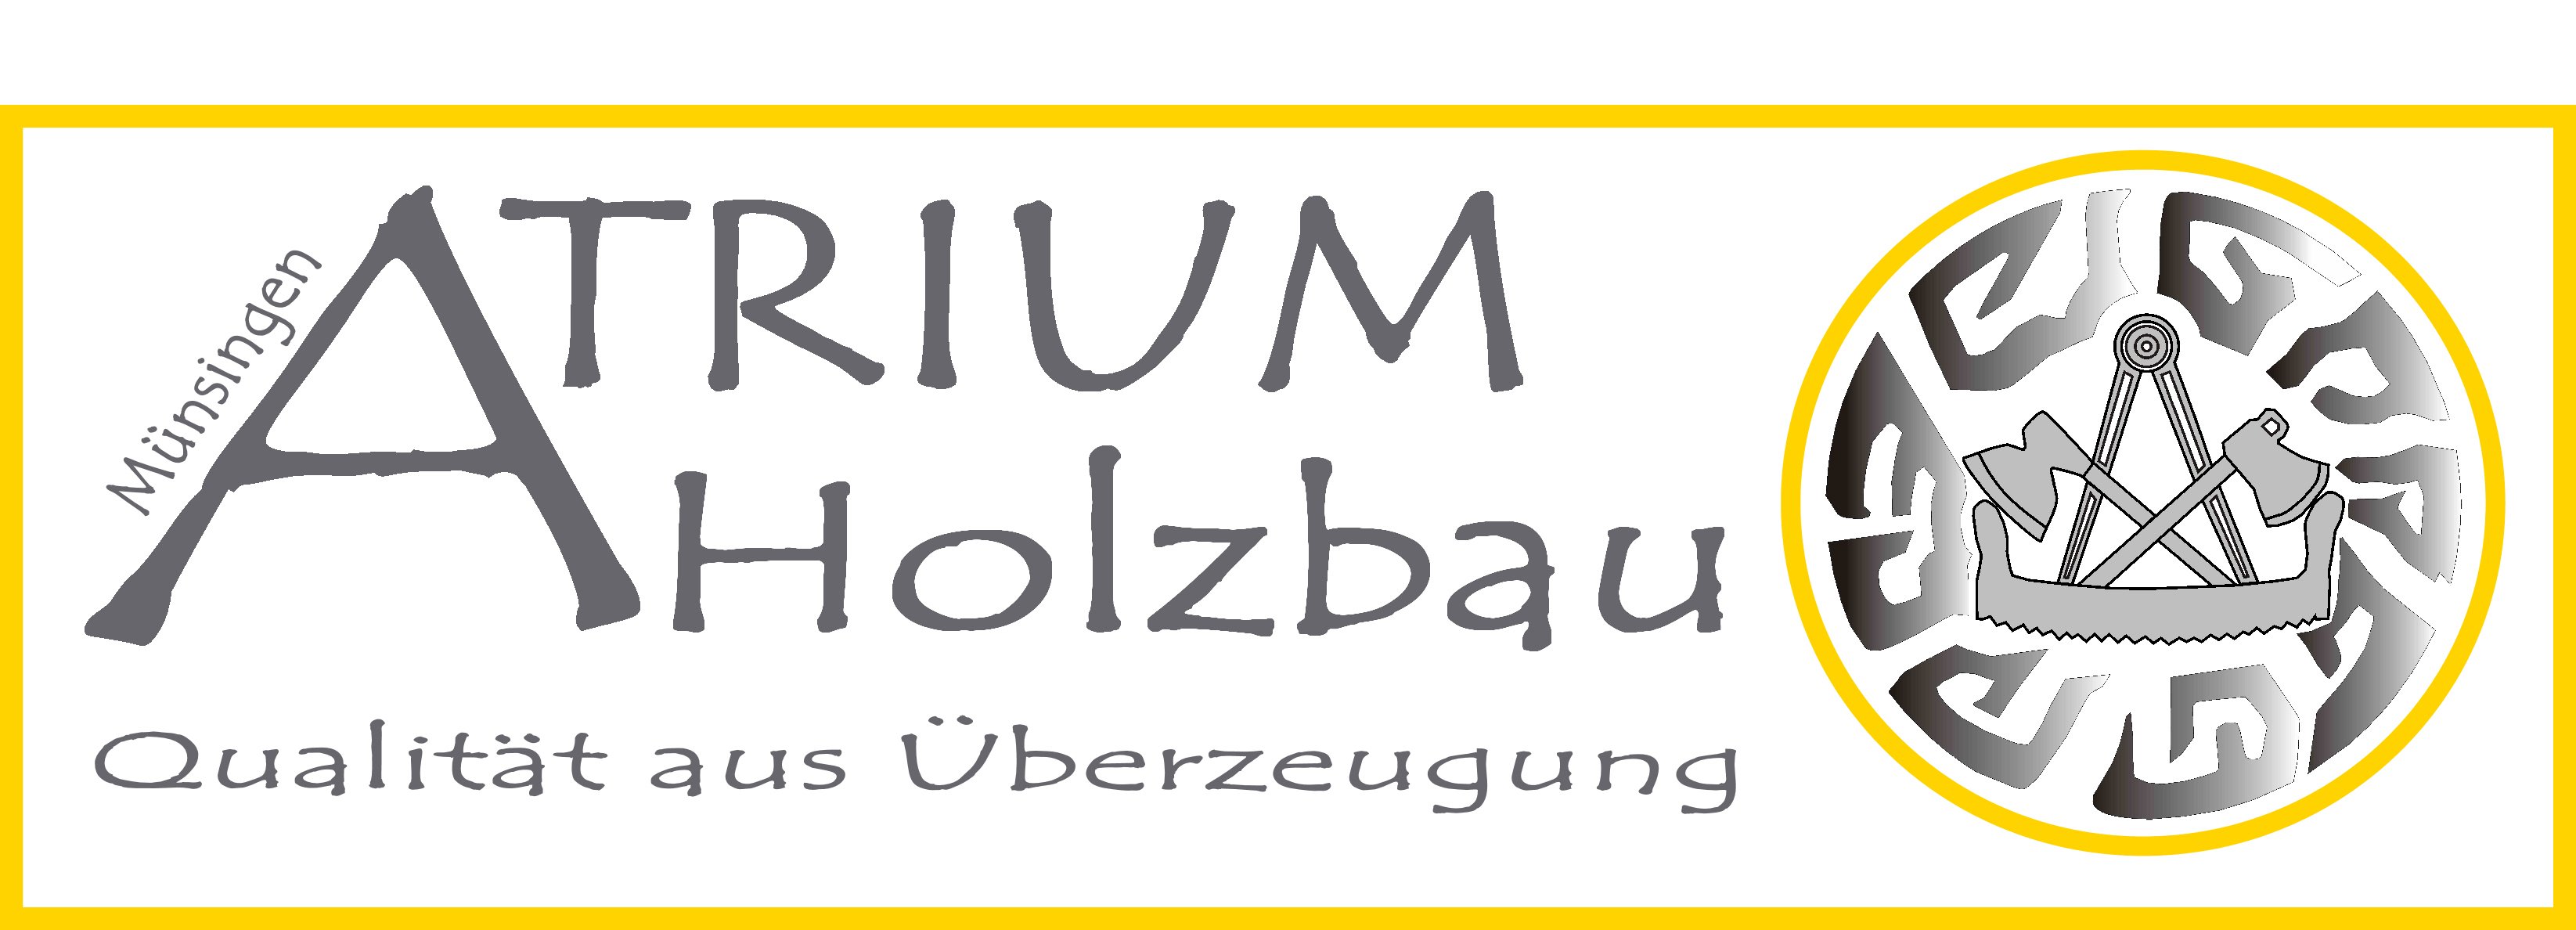 (c) Atrium-holzbau.com